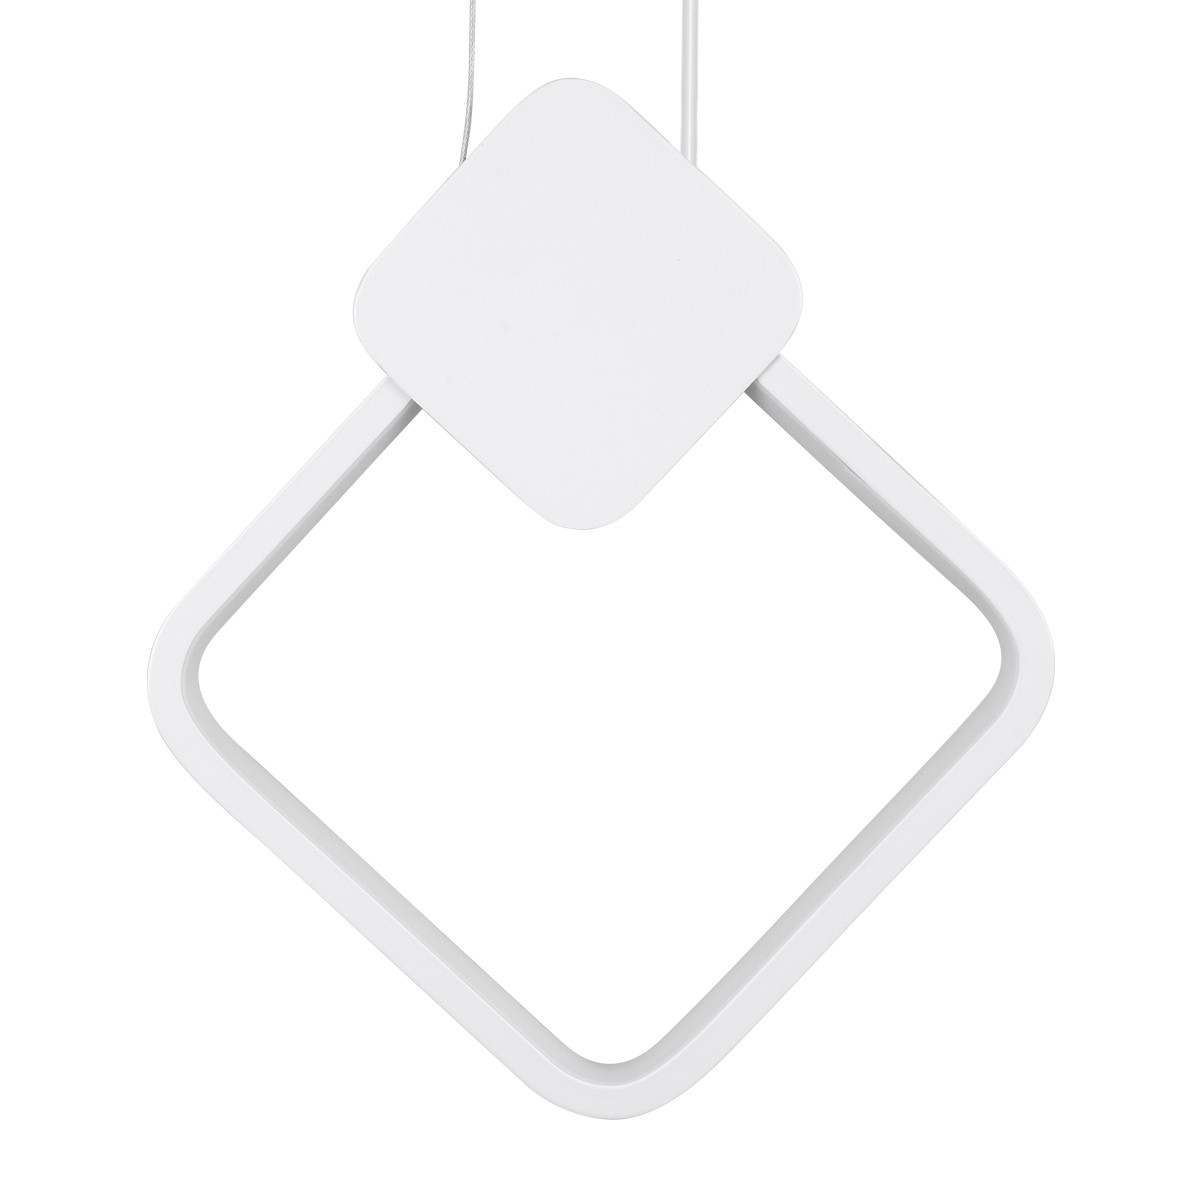 LED Κρεμαστό Φωτιστικό Οροφής Λευκό Design MARY 12W Εναλλαγή Φωτισμού μέσω Διακόπτη On/Off Μ20 x Π2.3 x Υ28.5cm 61083